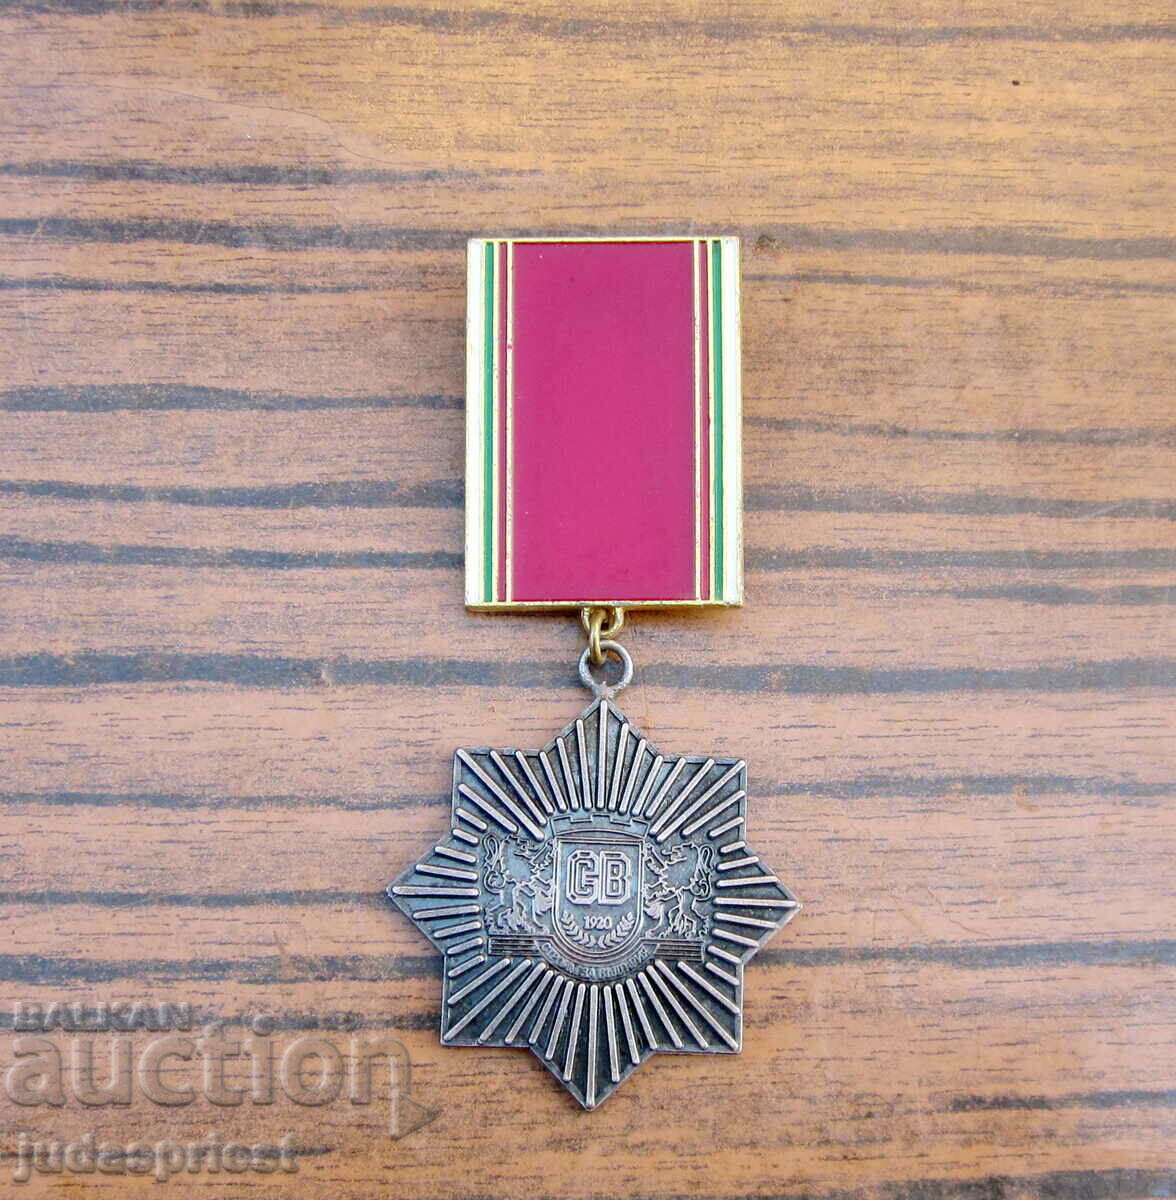 Βουλγαρικό στρατιωτικό μετάλλιο SV για αξιοκρατικά κατασκευαστικά στρατεύματα